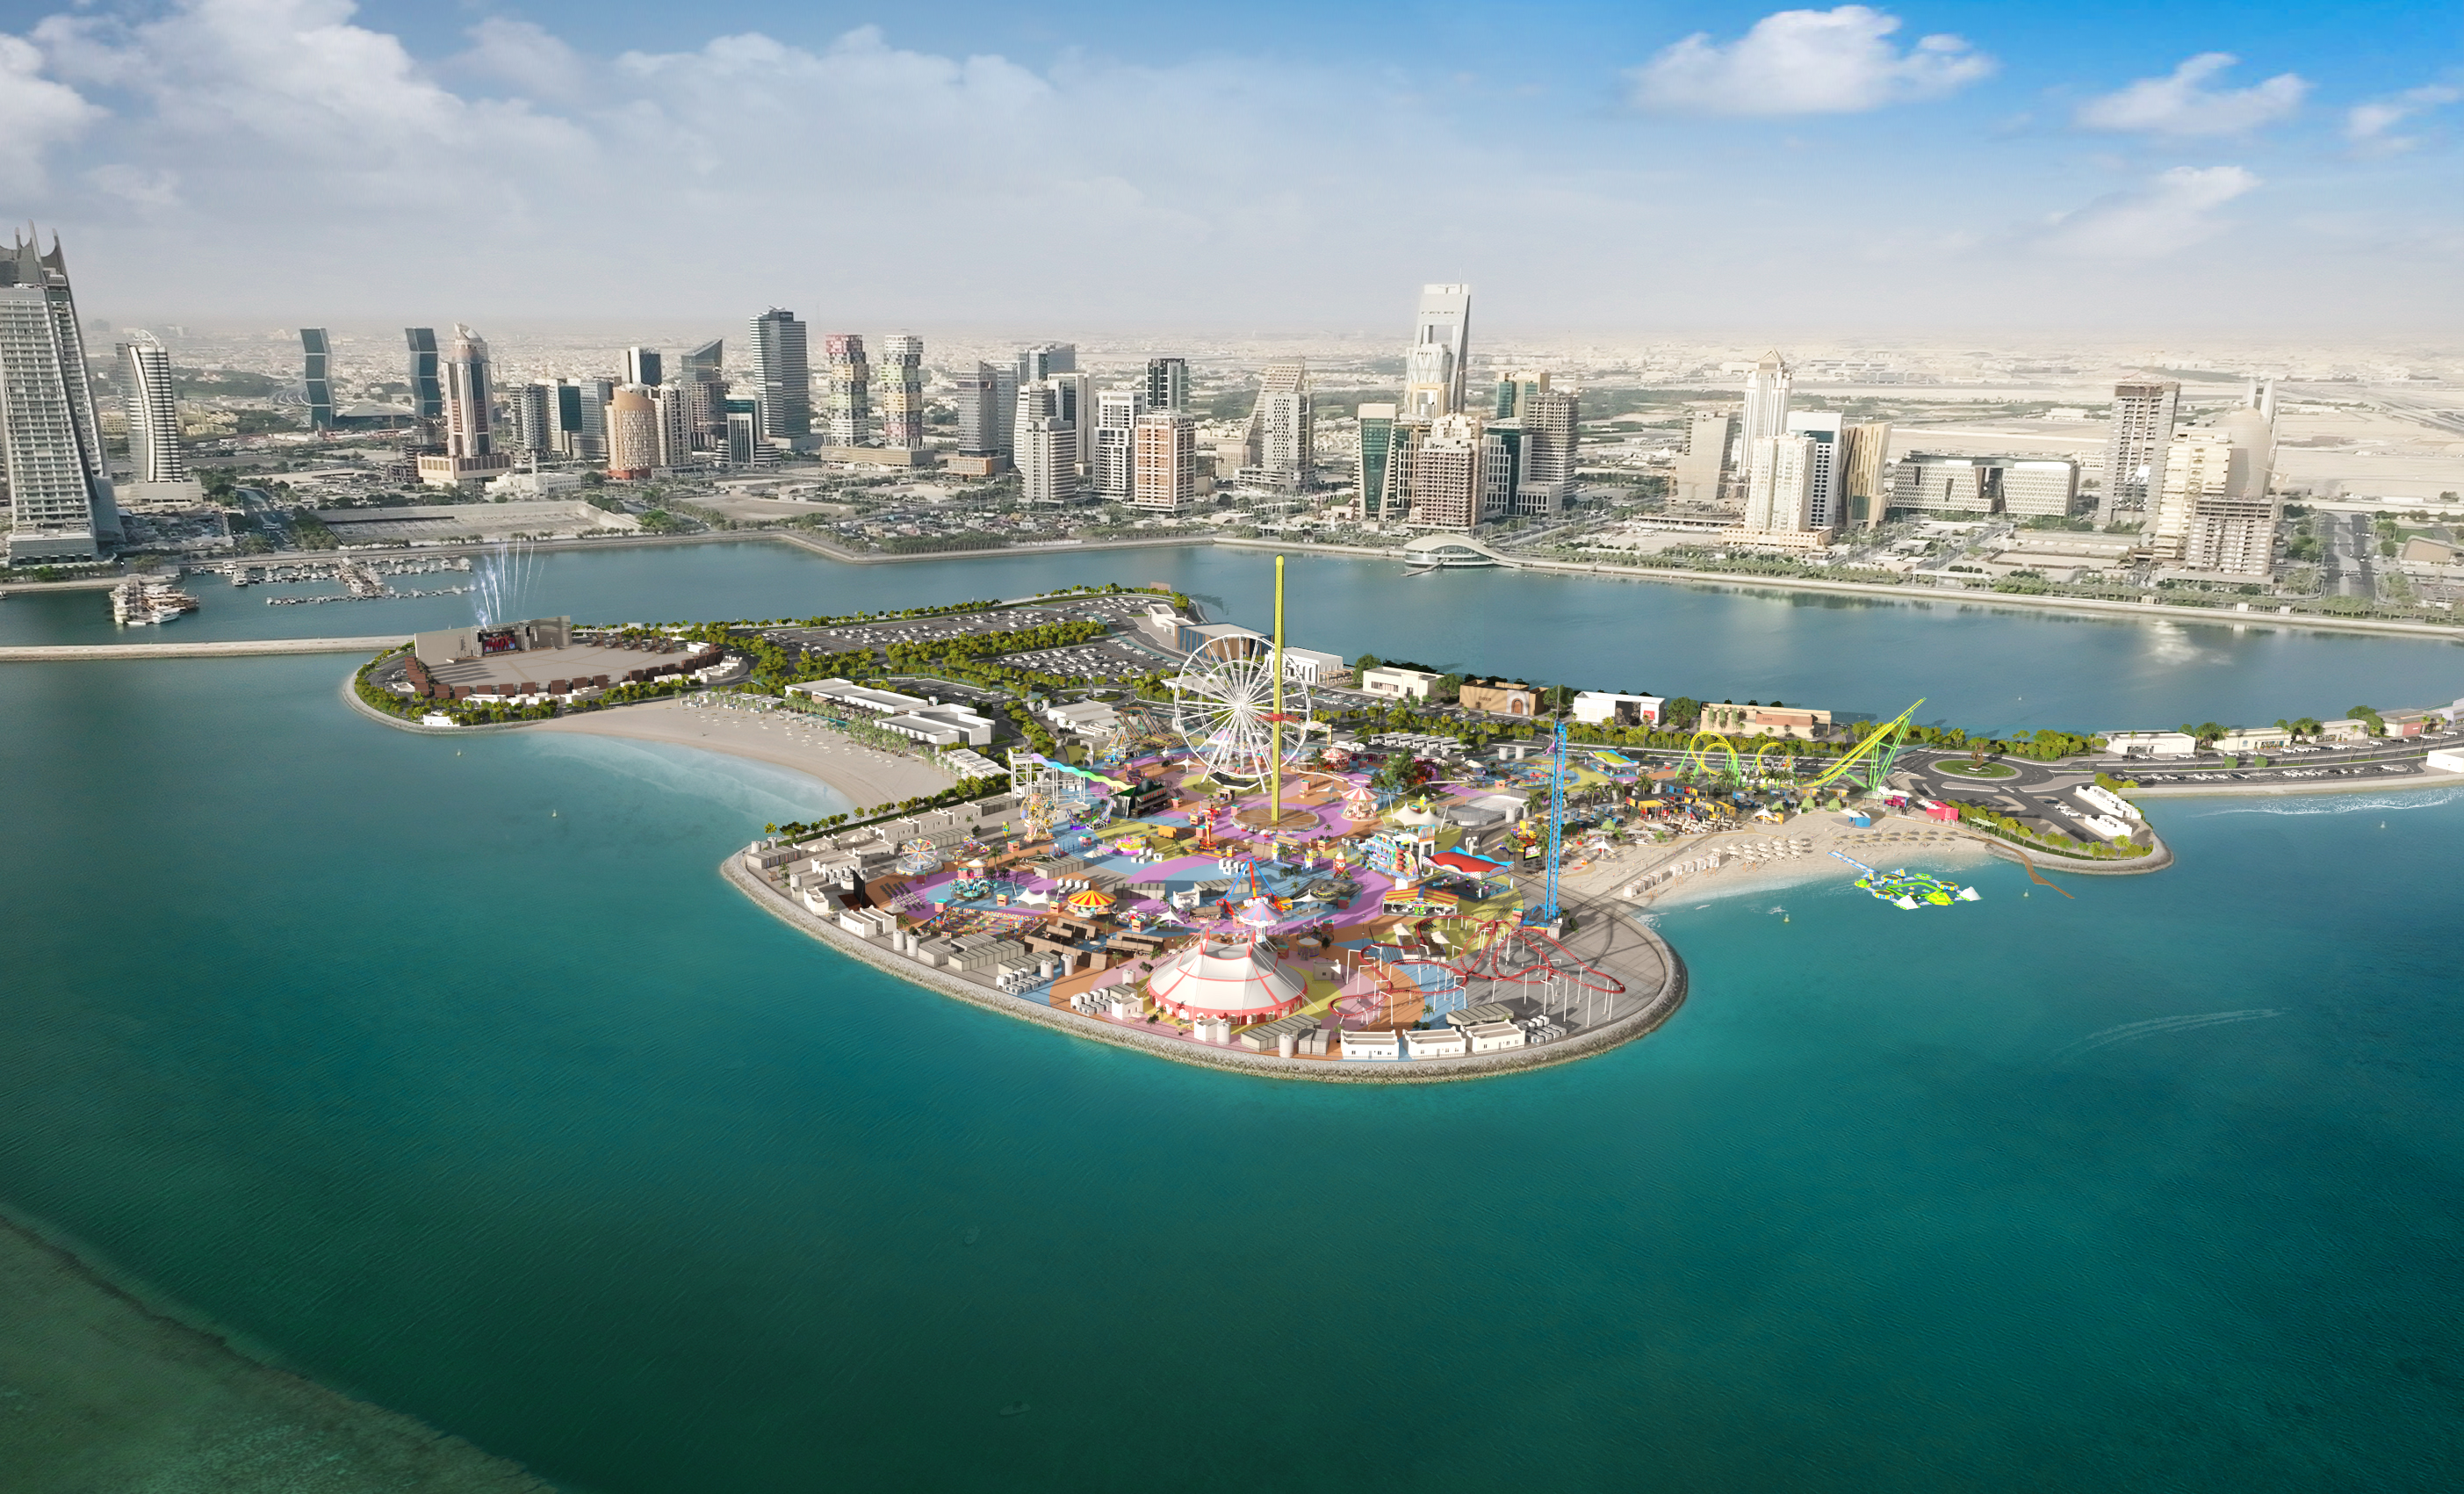 Qatar Tourism Participates in 13th Riyadh Travel Fair